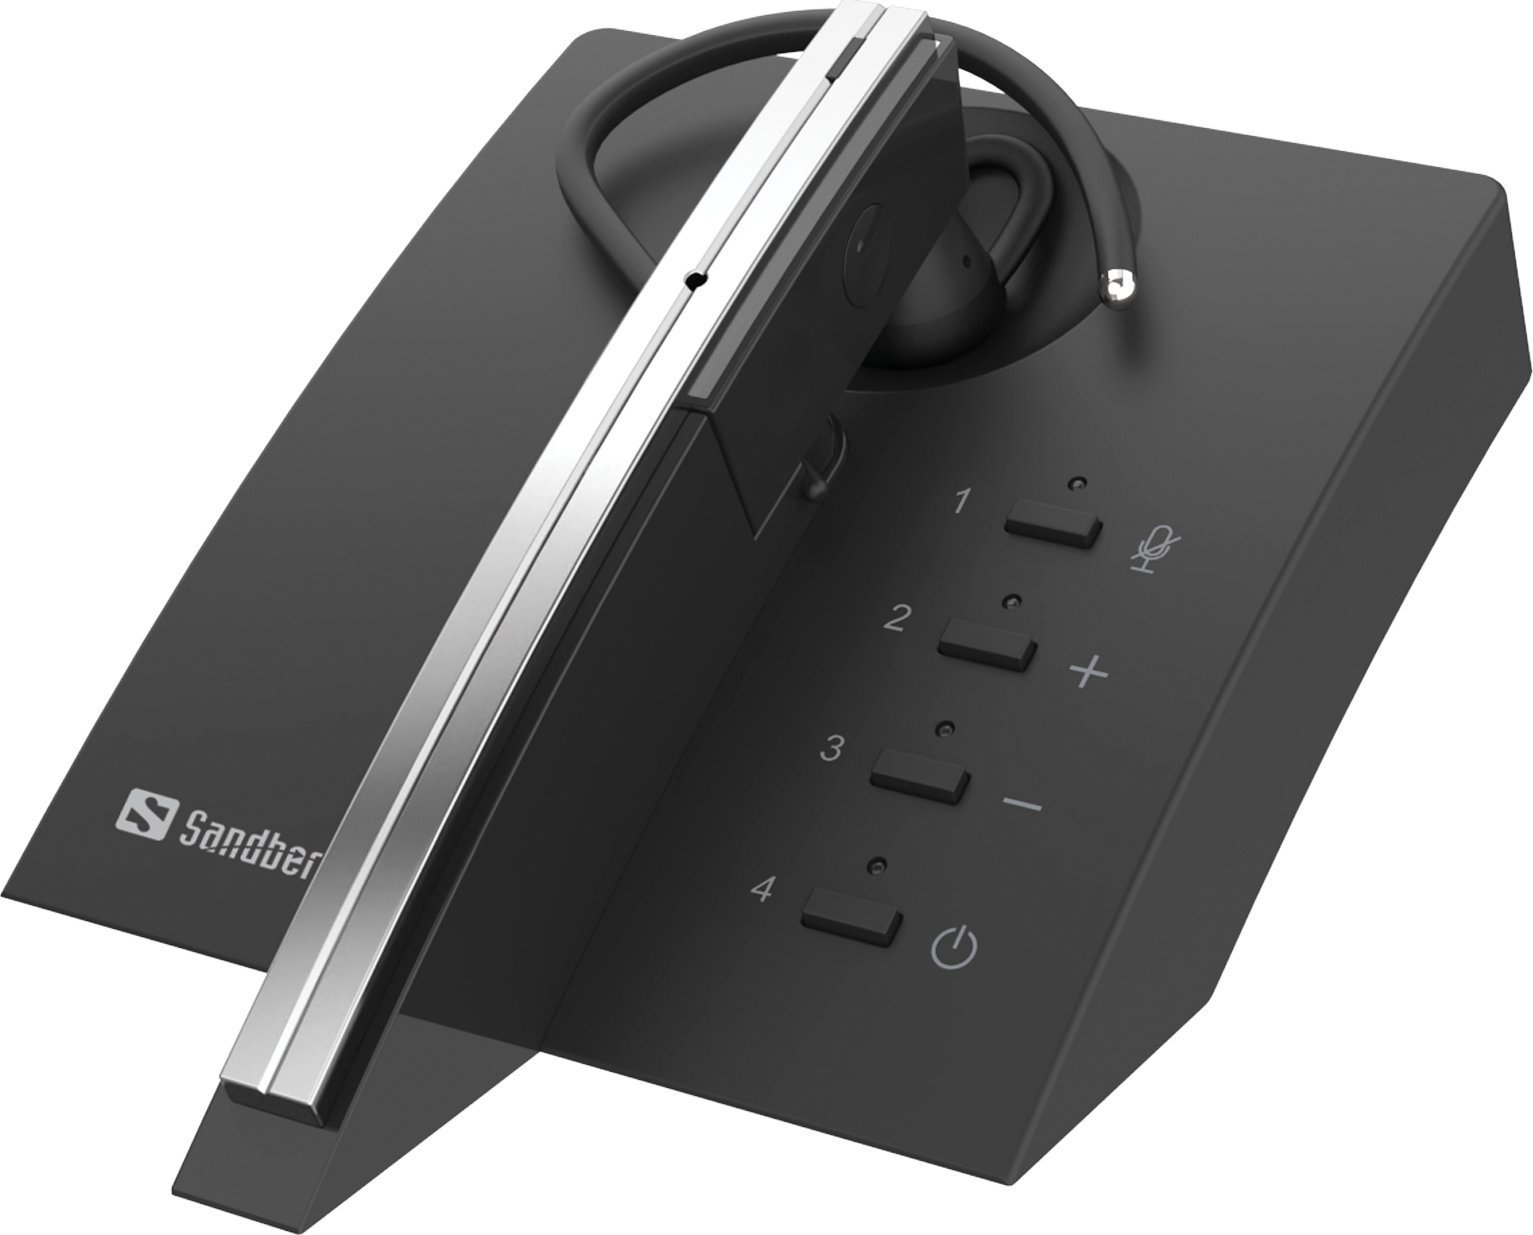 Casti bluetooth telefoane - Sandberg SANDBERG Bluetooth Earset Business Pro